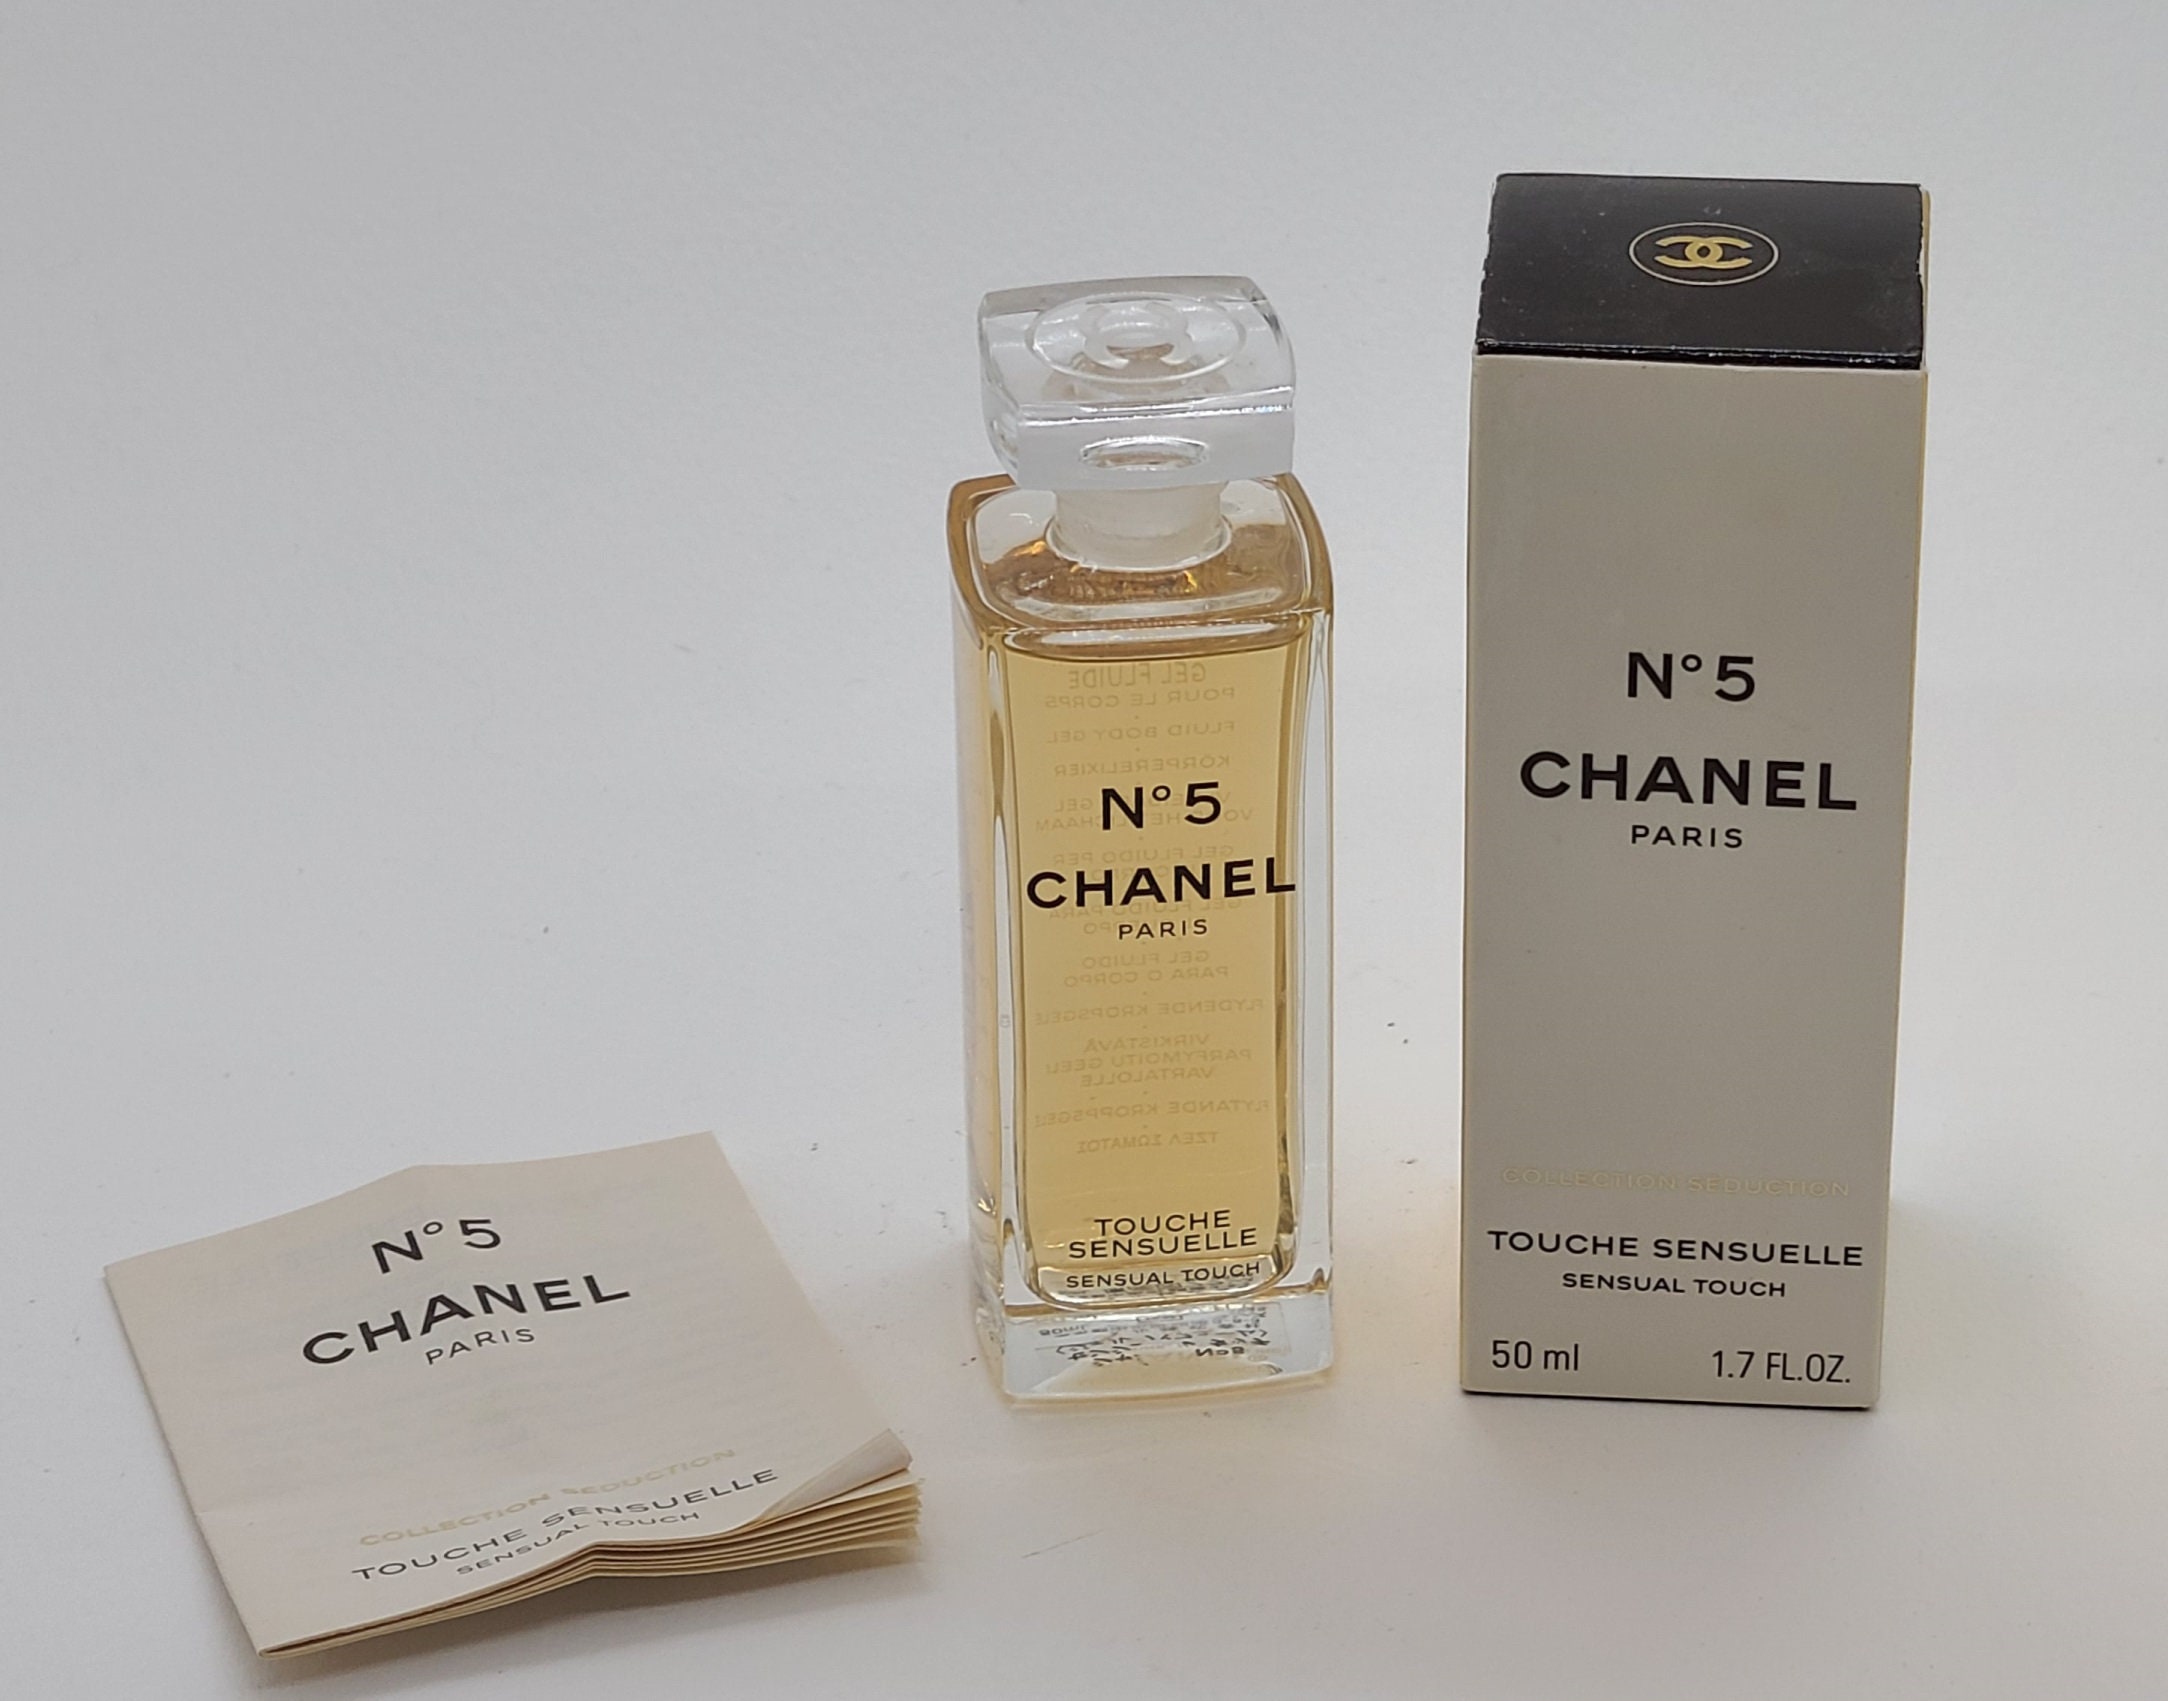 Chanel No 5 Elixir Sensuel Sensual Elixir Gel Touche -  Hong Kong